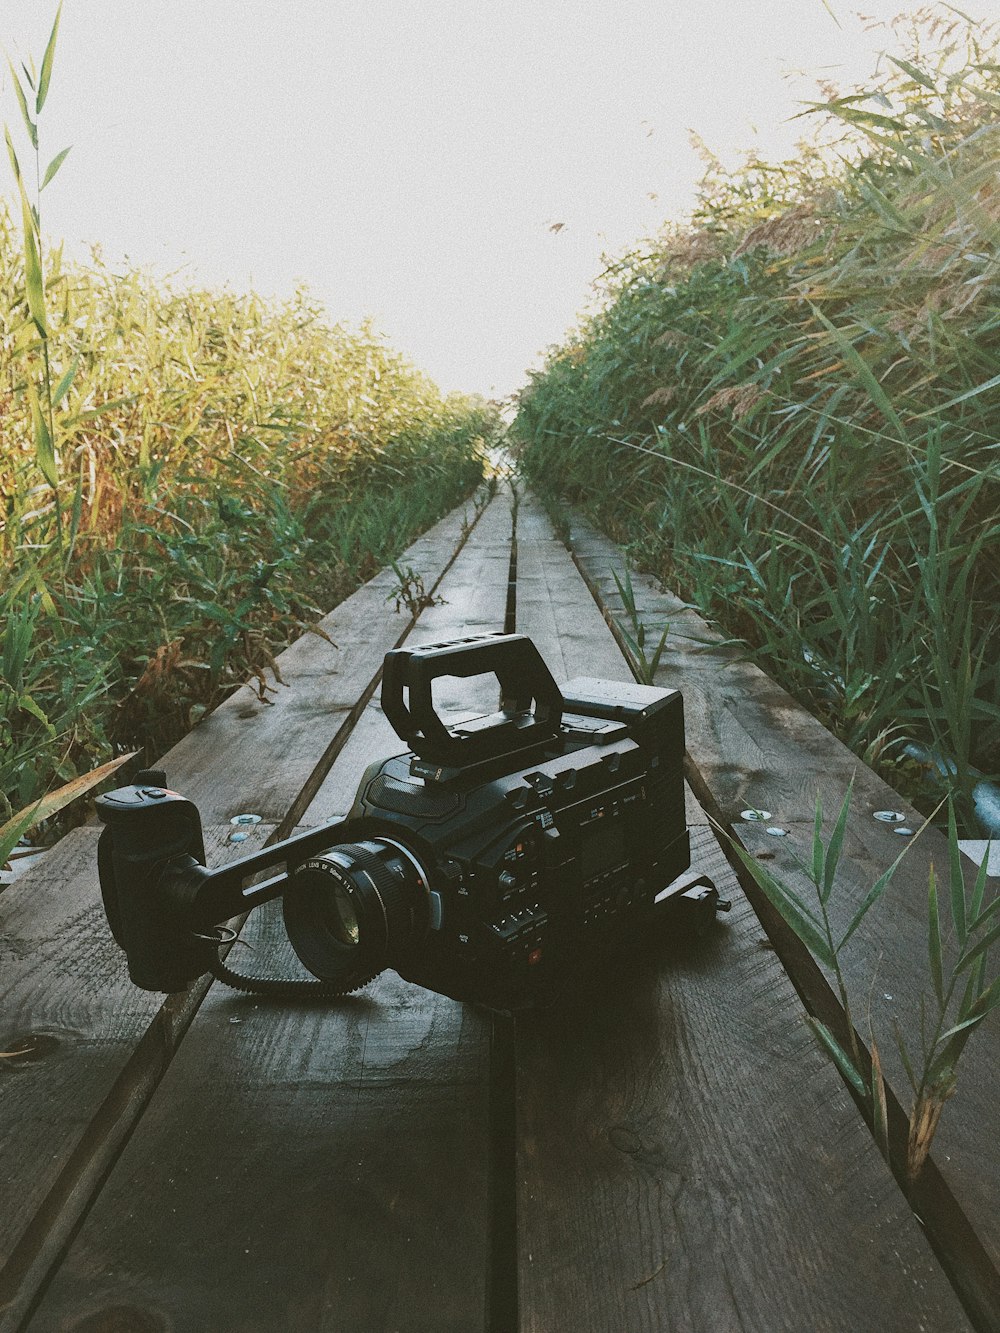 Fotografia de foco seletivo da filmadora preta no caminho de madeira marrom durante o dia